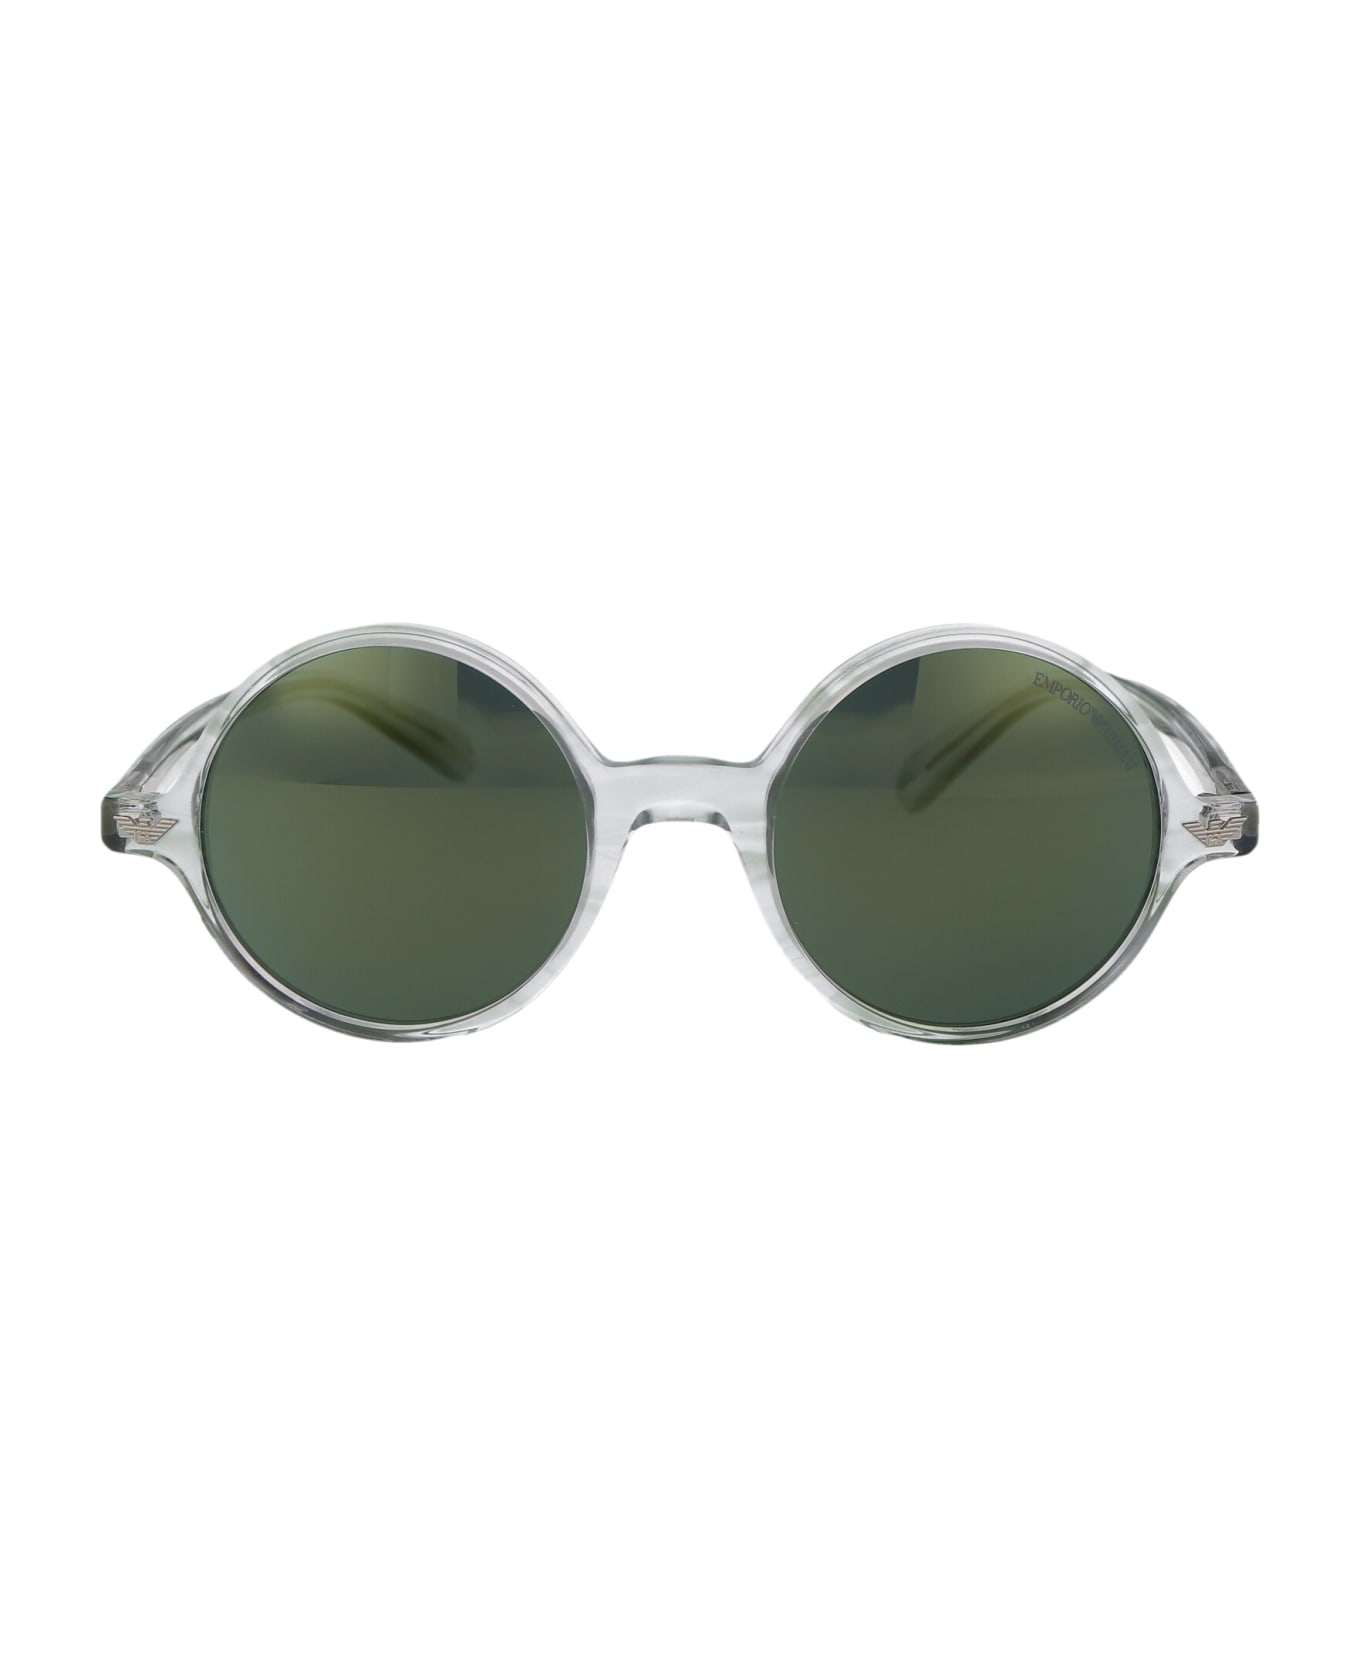 Emporio Armani 0ea 501m Sunglasses - 60216R Crystal Striped Green